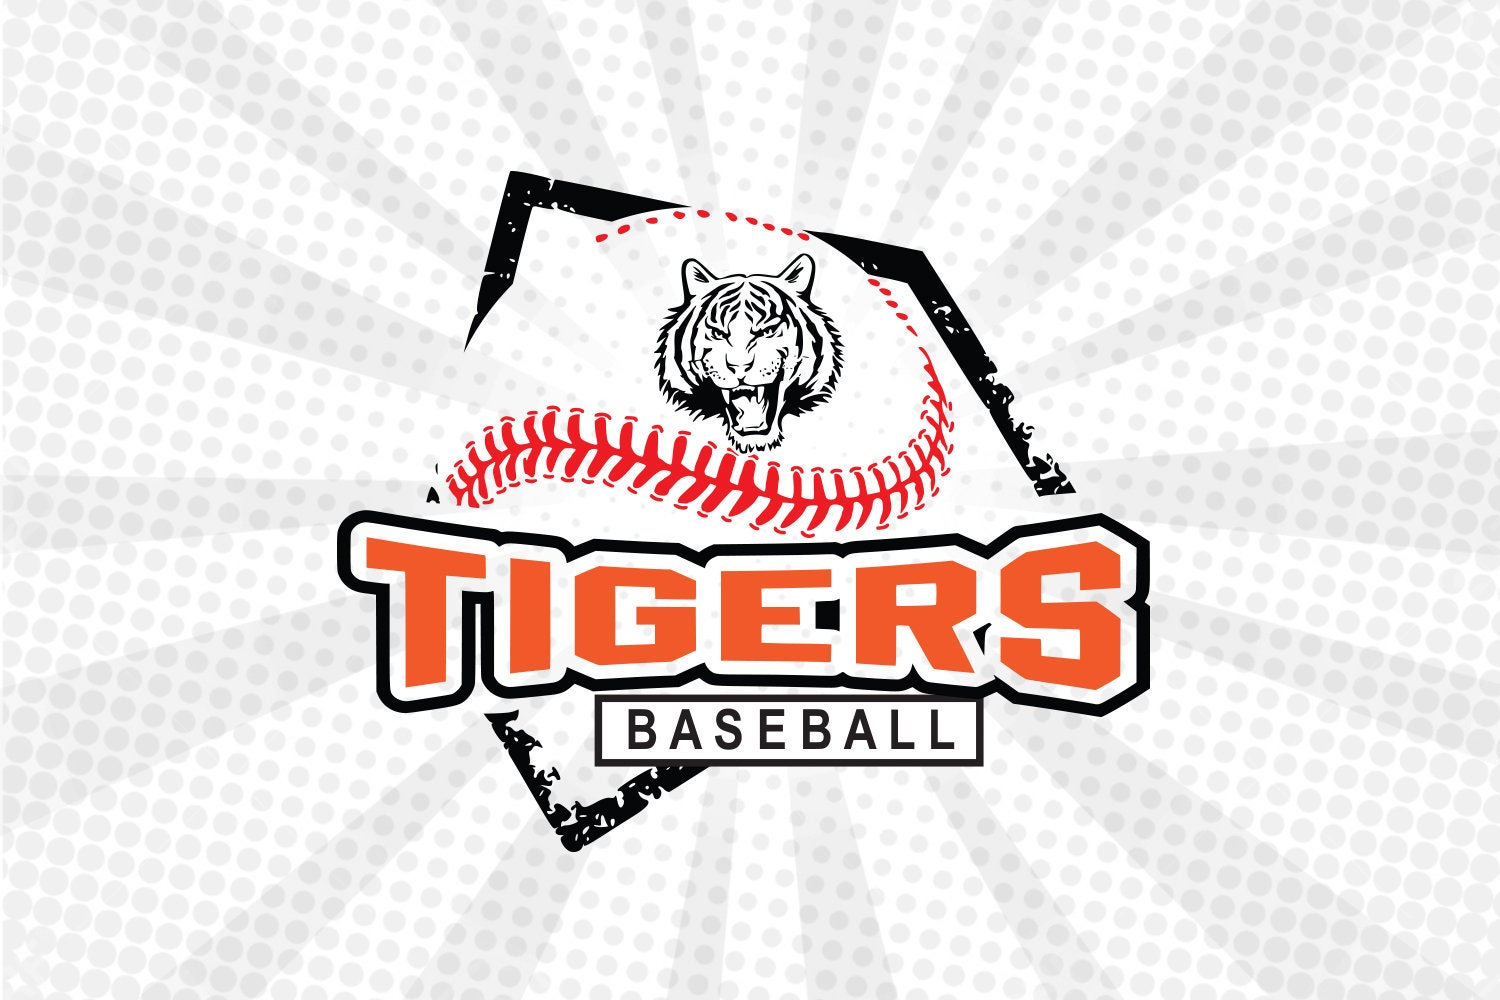 Tigers ,Tigers svg,Tigers Baseball ,Tigers mascot,Tigers cut file,Tigers  cricut,Tigers pride,Baseball,Softball,Cut file,Cricut,Tigers head